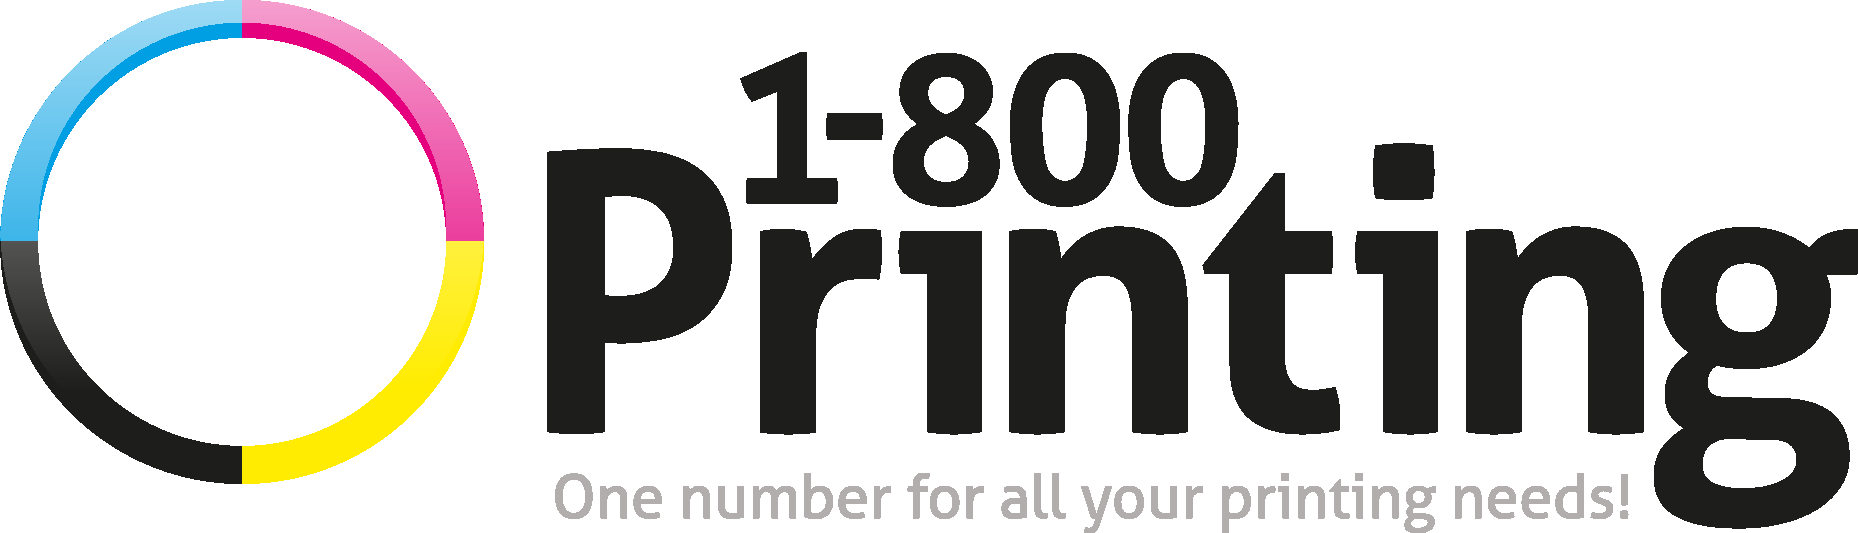 1 800 PRINTING new Logo Vector